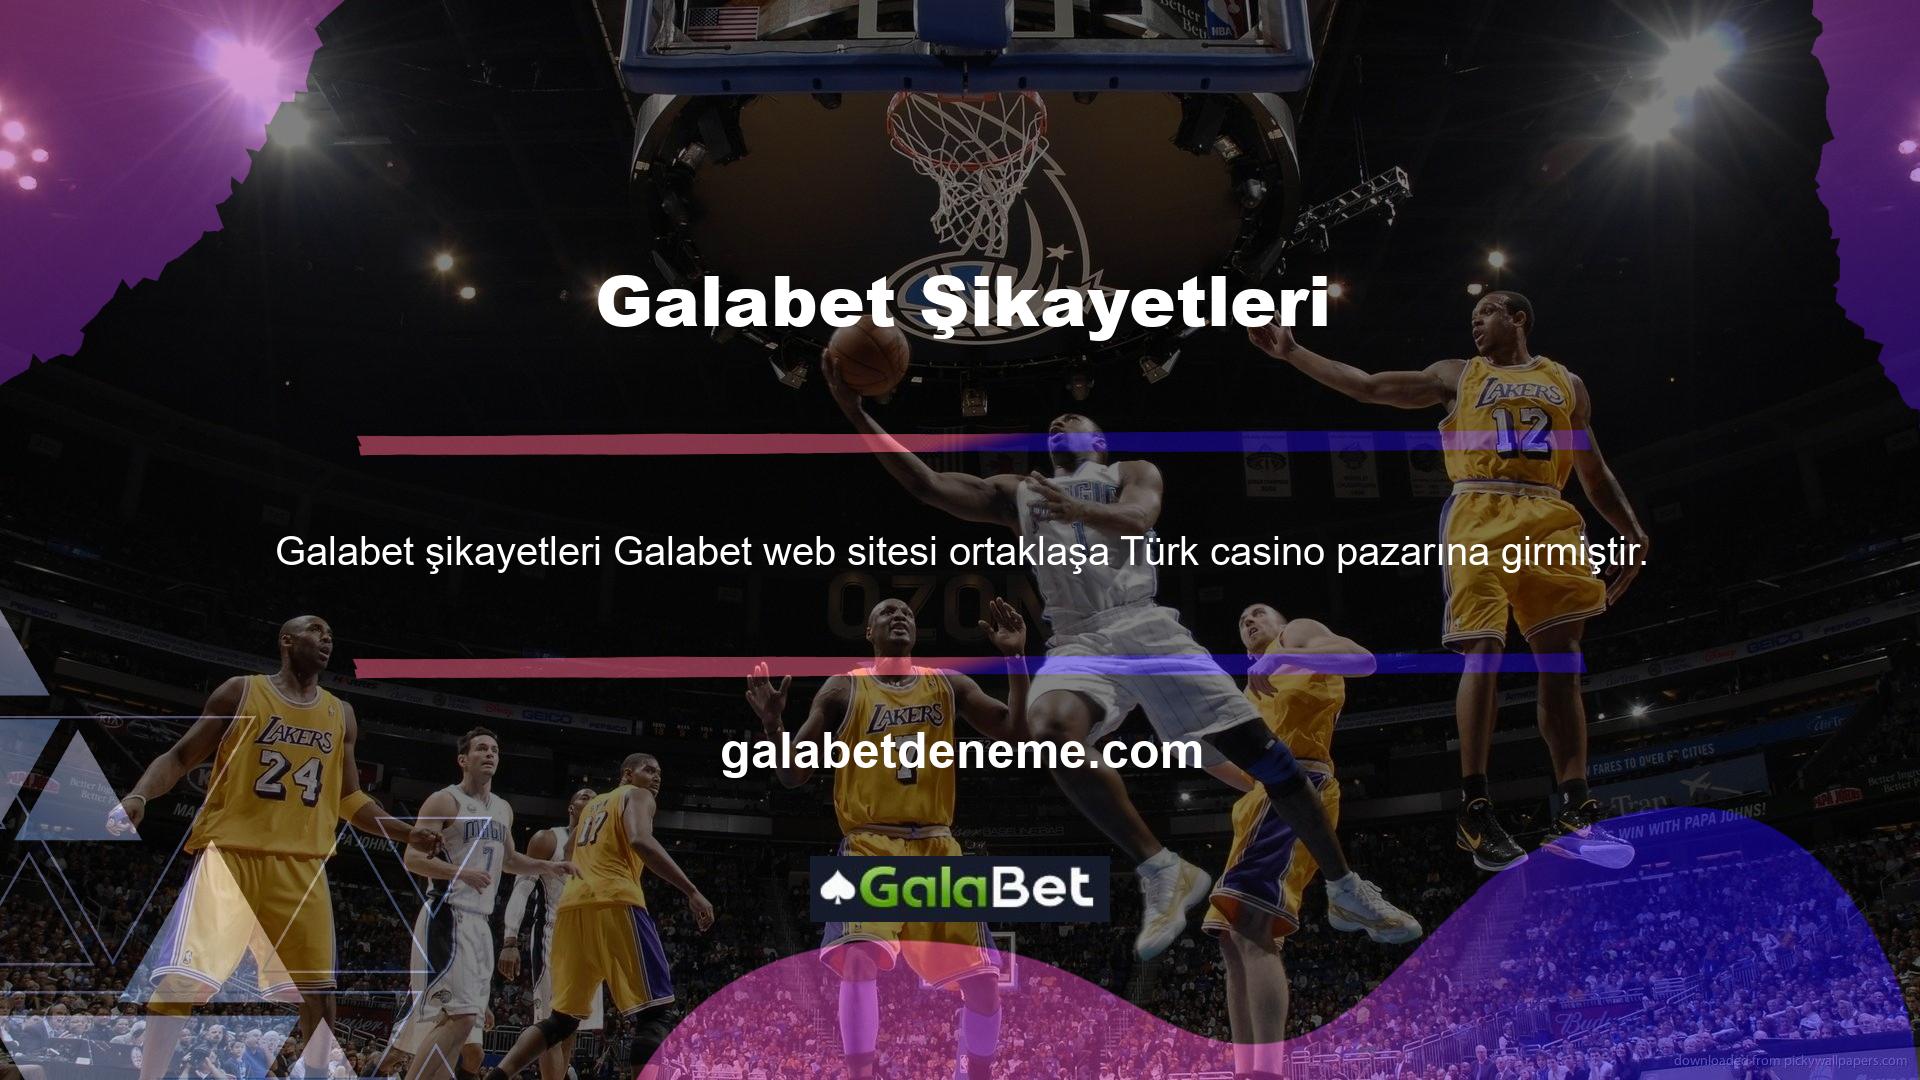 Galabet şikayetleri Casino Komisyonu tarafından araştırılmaktadır ve sektördeki en popüler, güvenilir casino platformlarından biridir